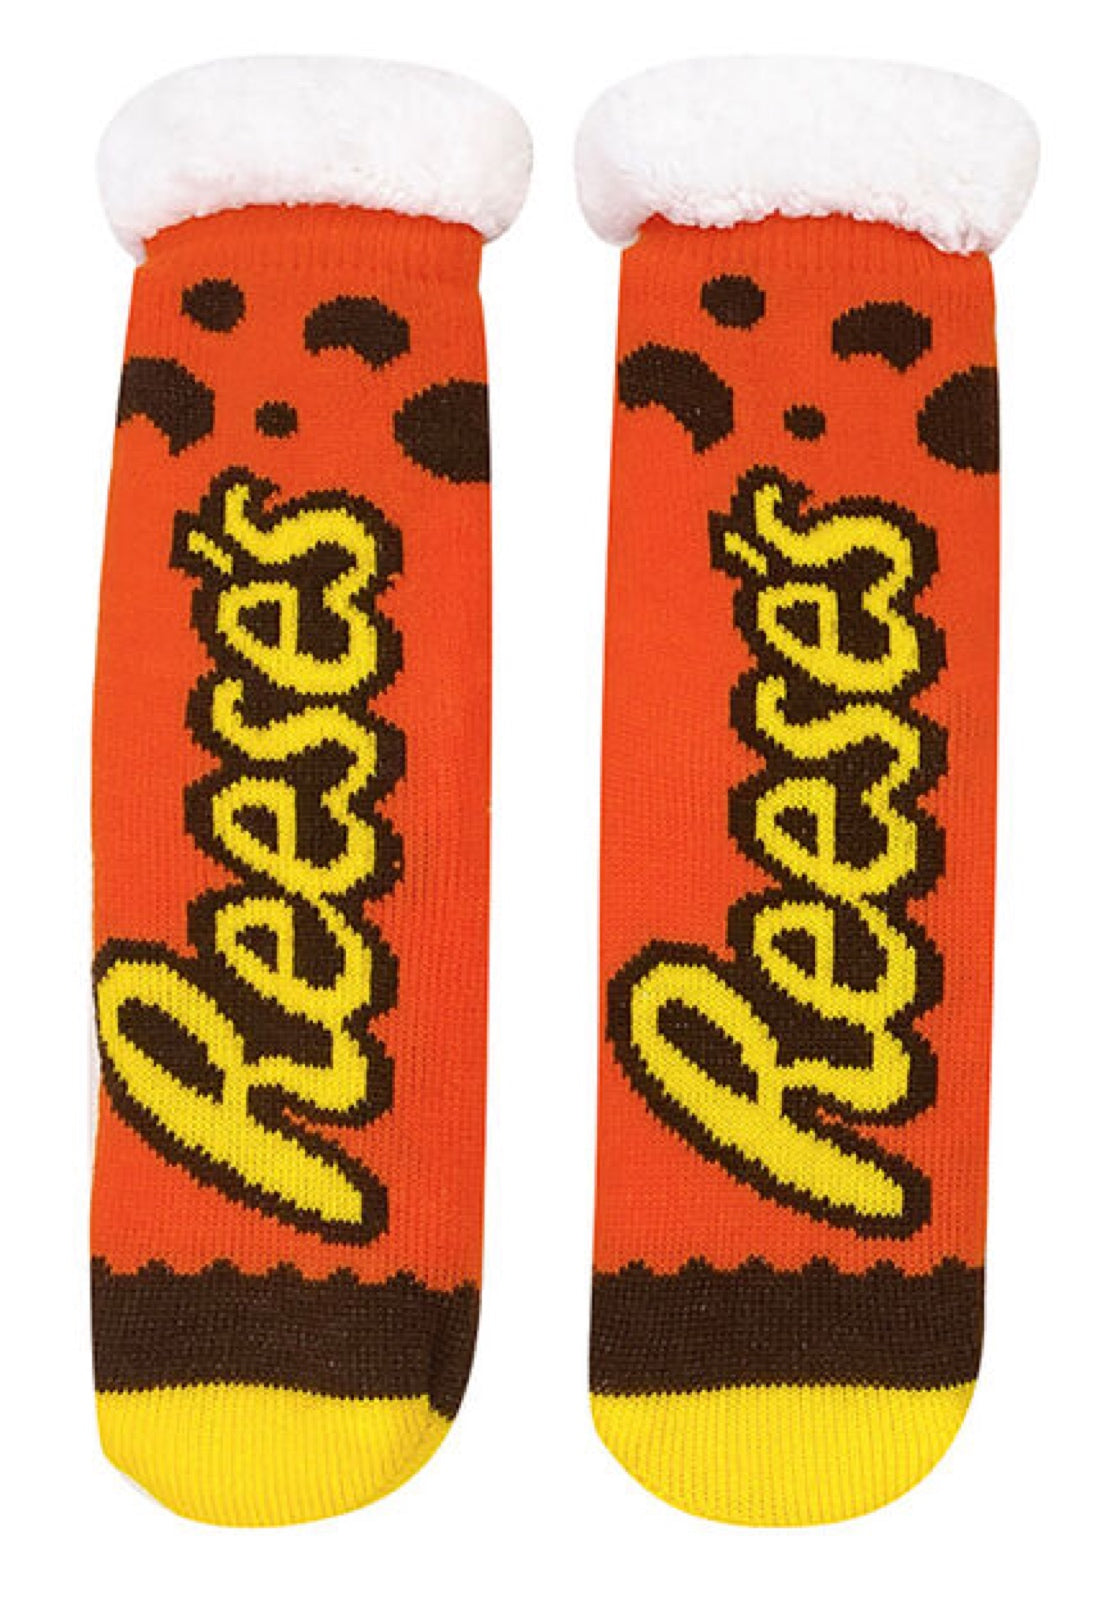 Odd Sox Reese's Crew Socks for Men in Orange